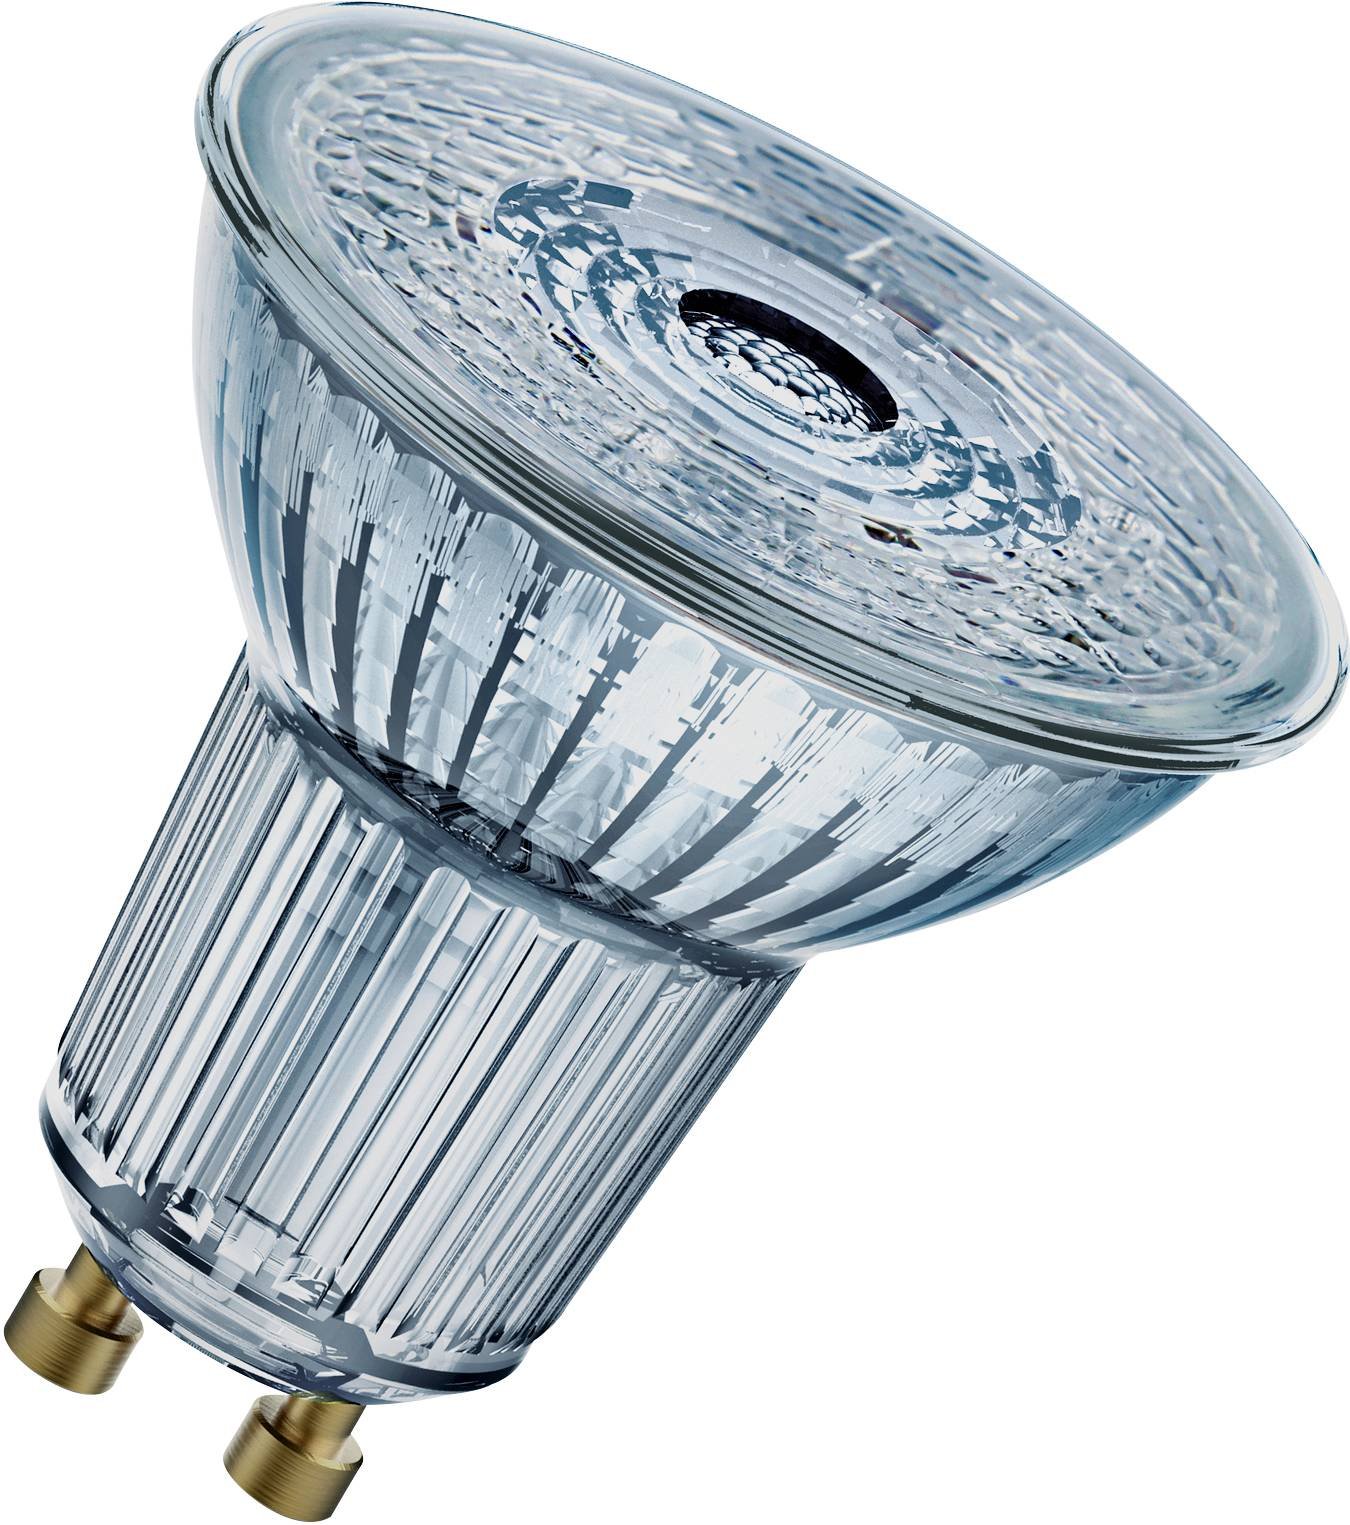 LED lemputė OSRAM, GU10, PAR16 80, reflektorinė, 8,3W, 4000K, 36°, 575 lm, dimeriuojama - 1